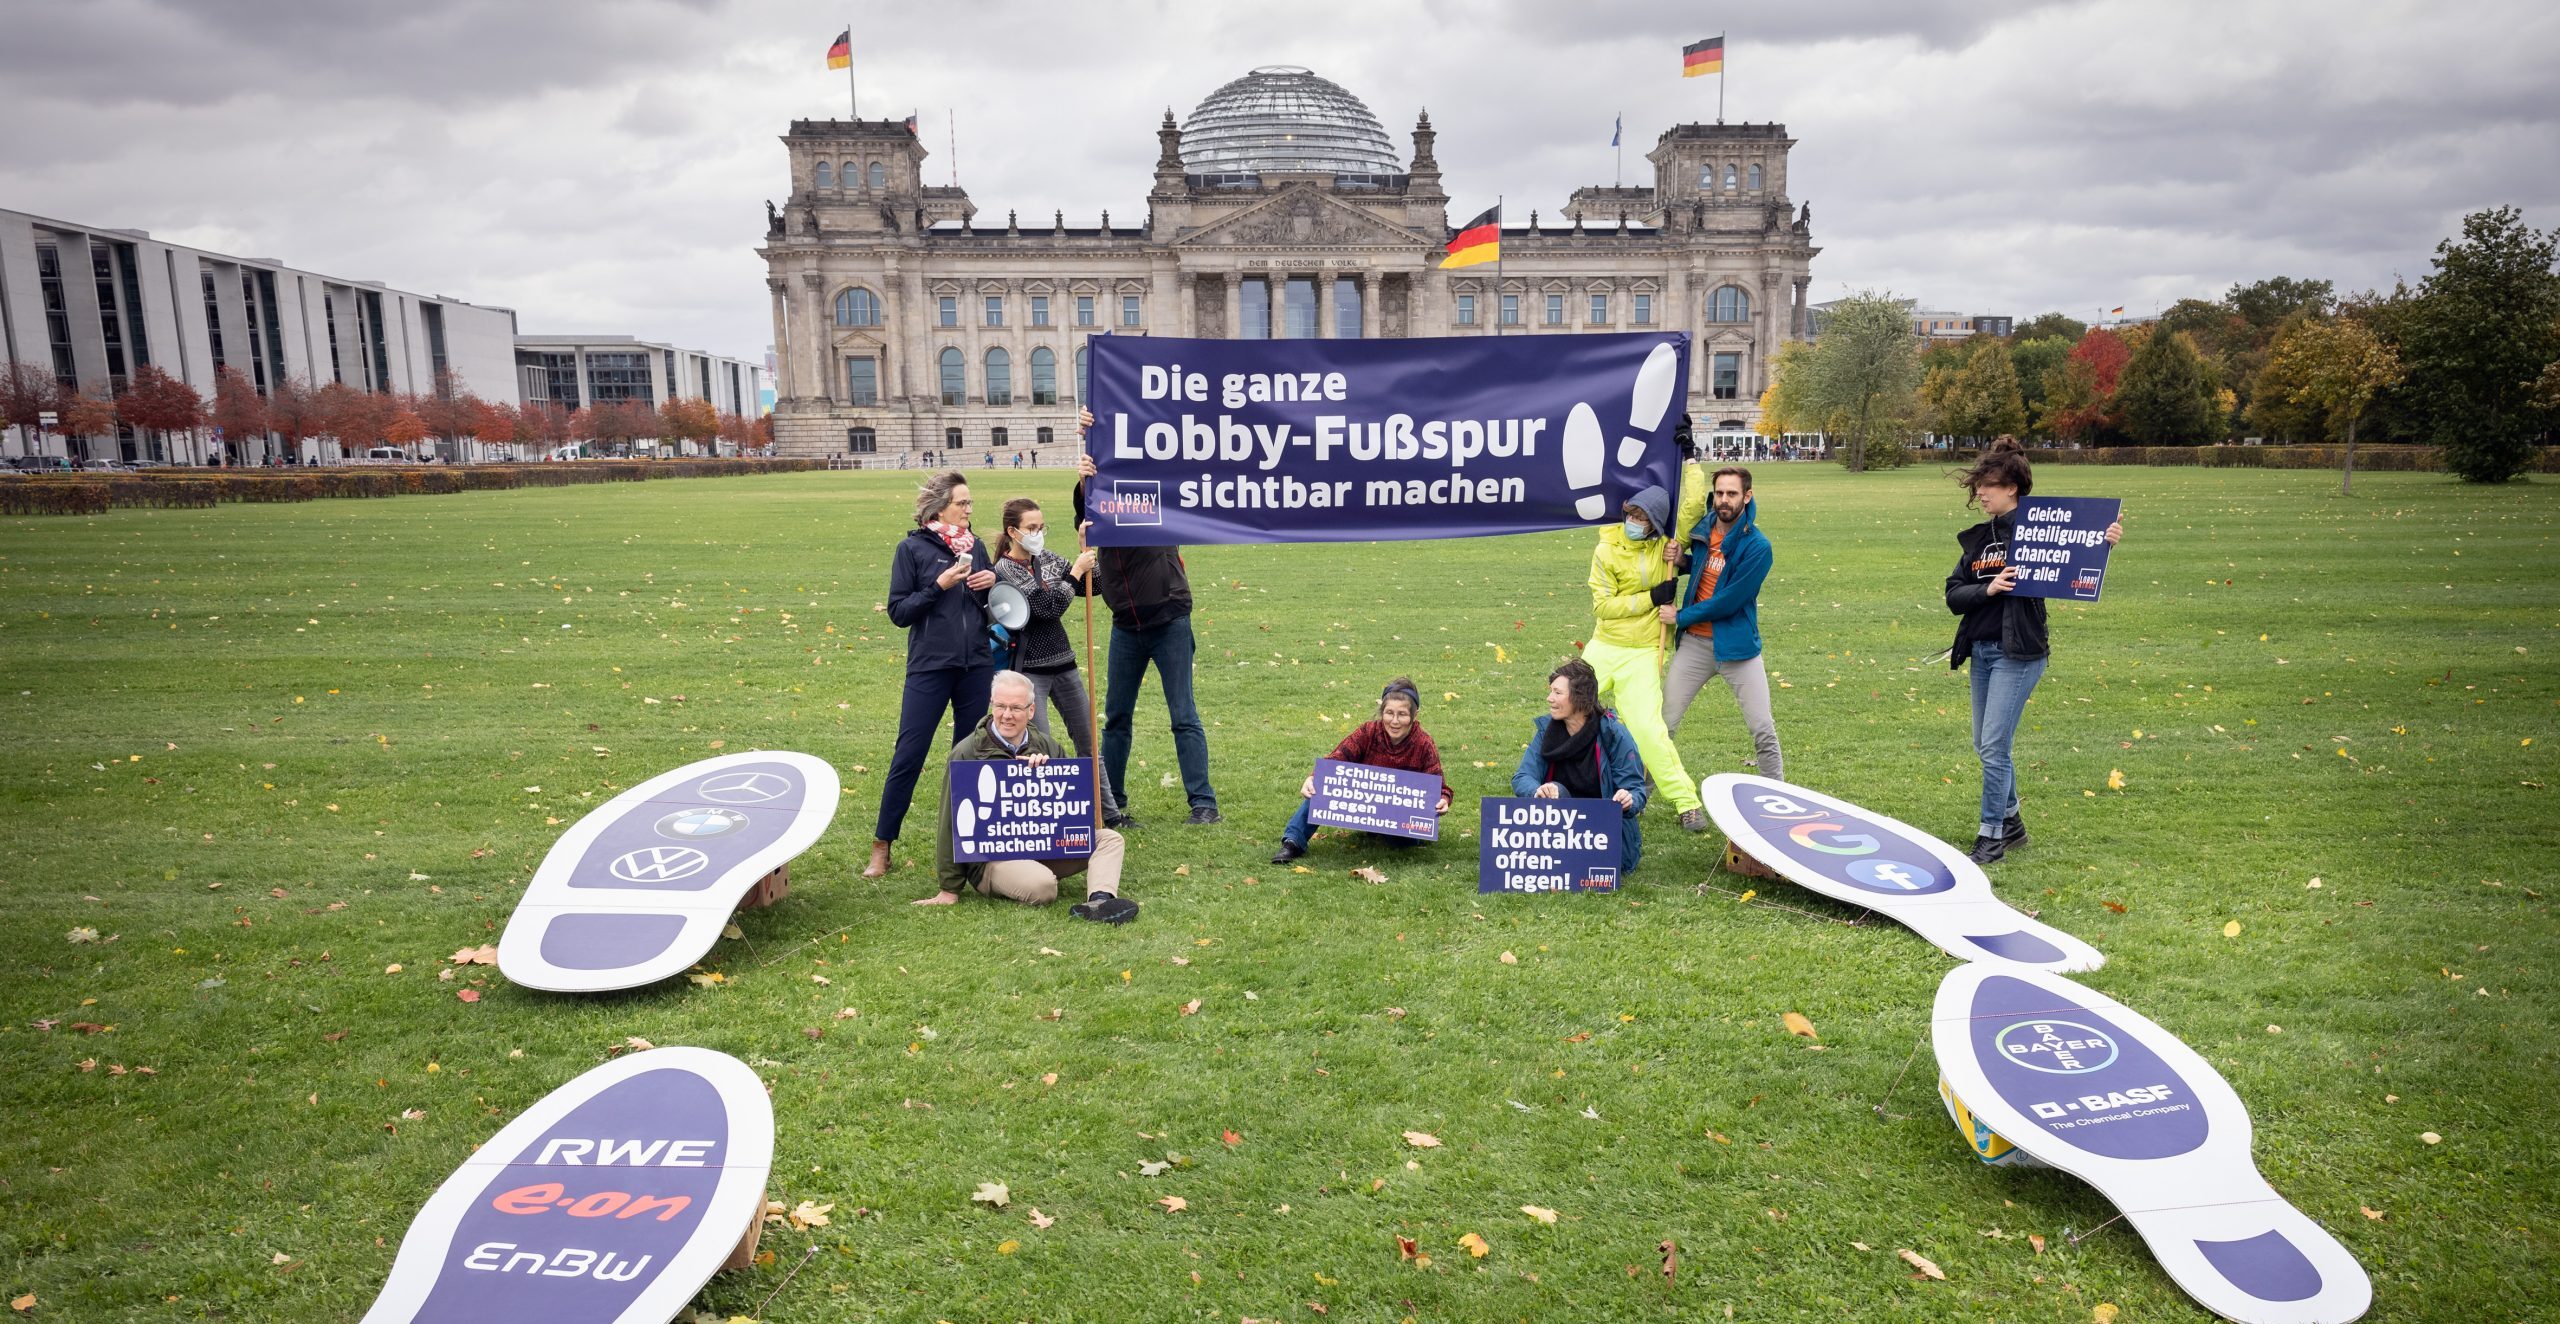 LobbyControl-Team mit "Die ganze Lobby-Fußspur sichtbar machen!" Schildern vor dem Bundestag